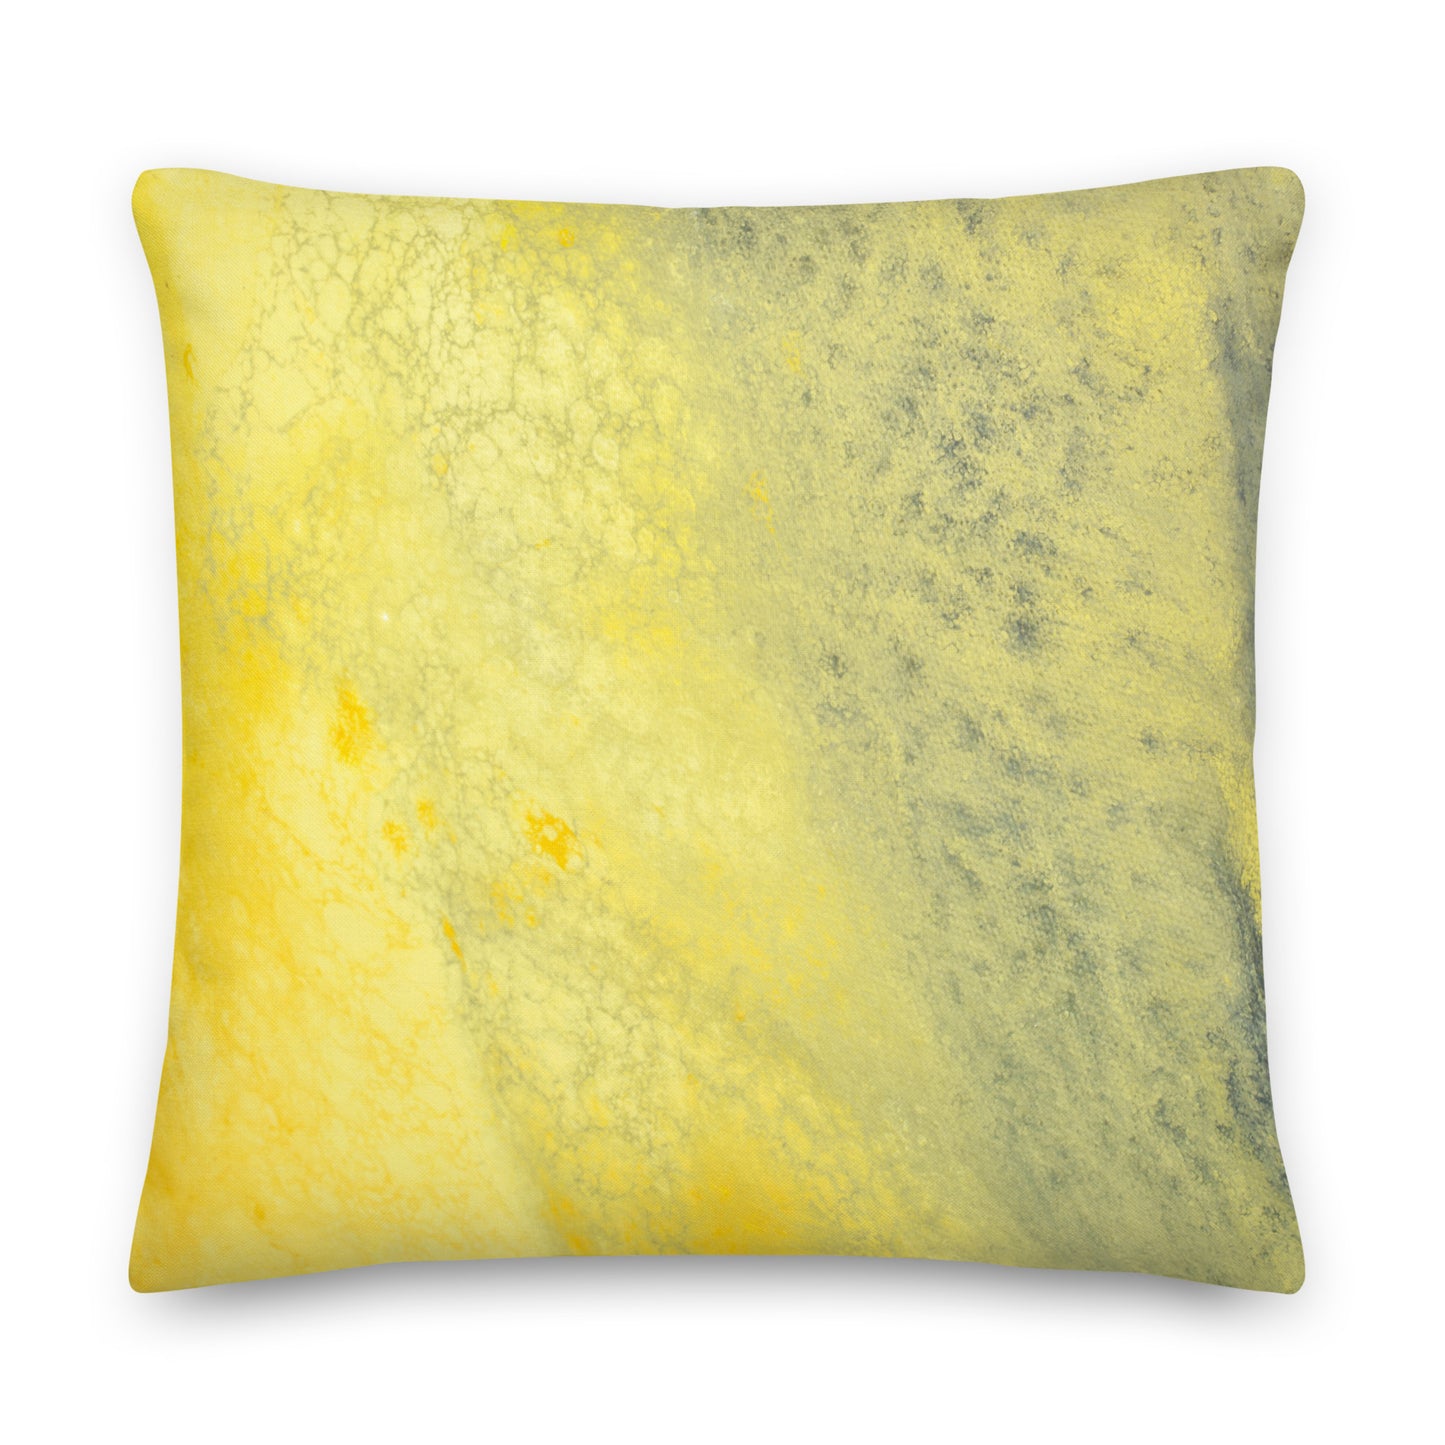 Travesseiro Premium - design amarelo e cinza